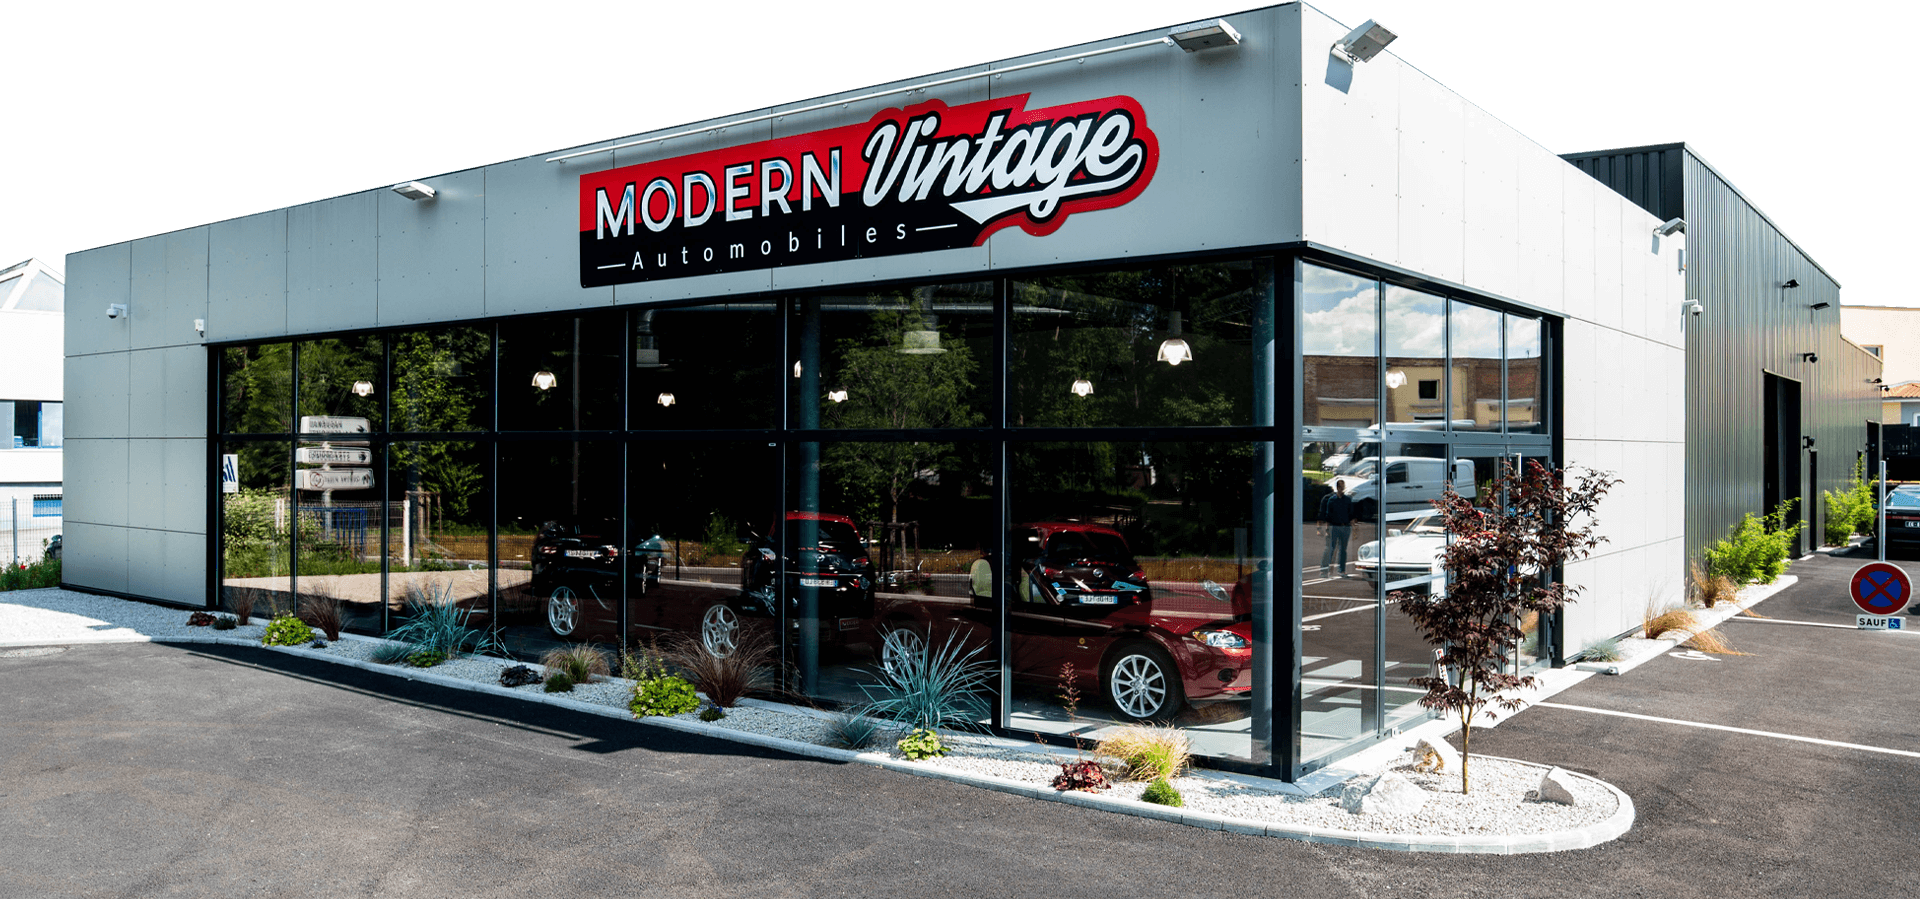 Garage Modern Vintage Automobiles : entretien, réparation, carrosserie et  vente